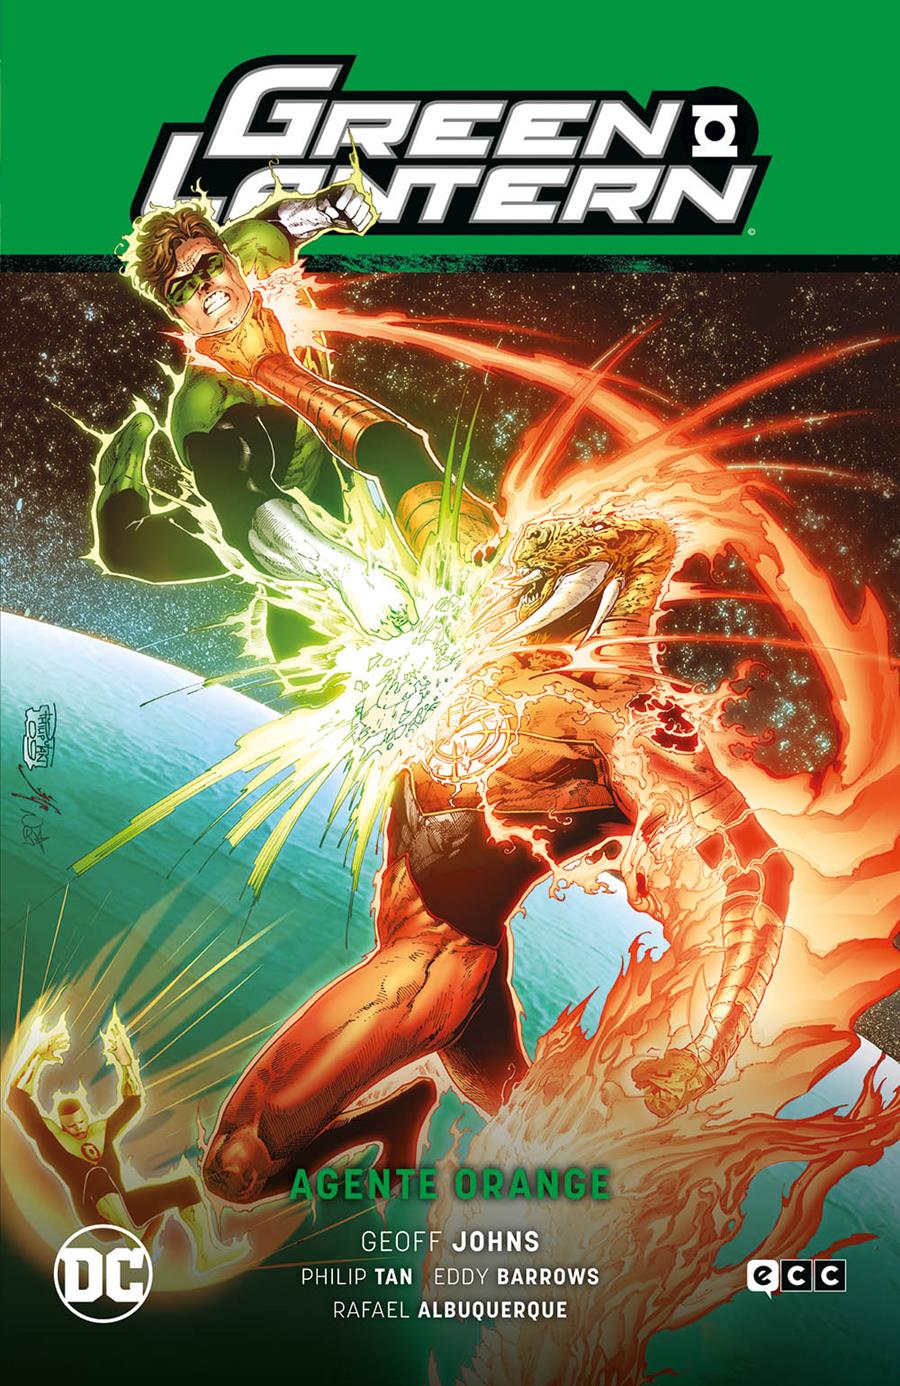 Green Lantern vol. 07: Agente Orange (GL Saga - La noche más oscura Parte 5) | N0521-ECC23 | Eddy Barrows / Geoff Johns / Philip Tan | Terra de Còmic - Tu tienda de cómics online especializada en cómics, manga y merchandising